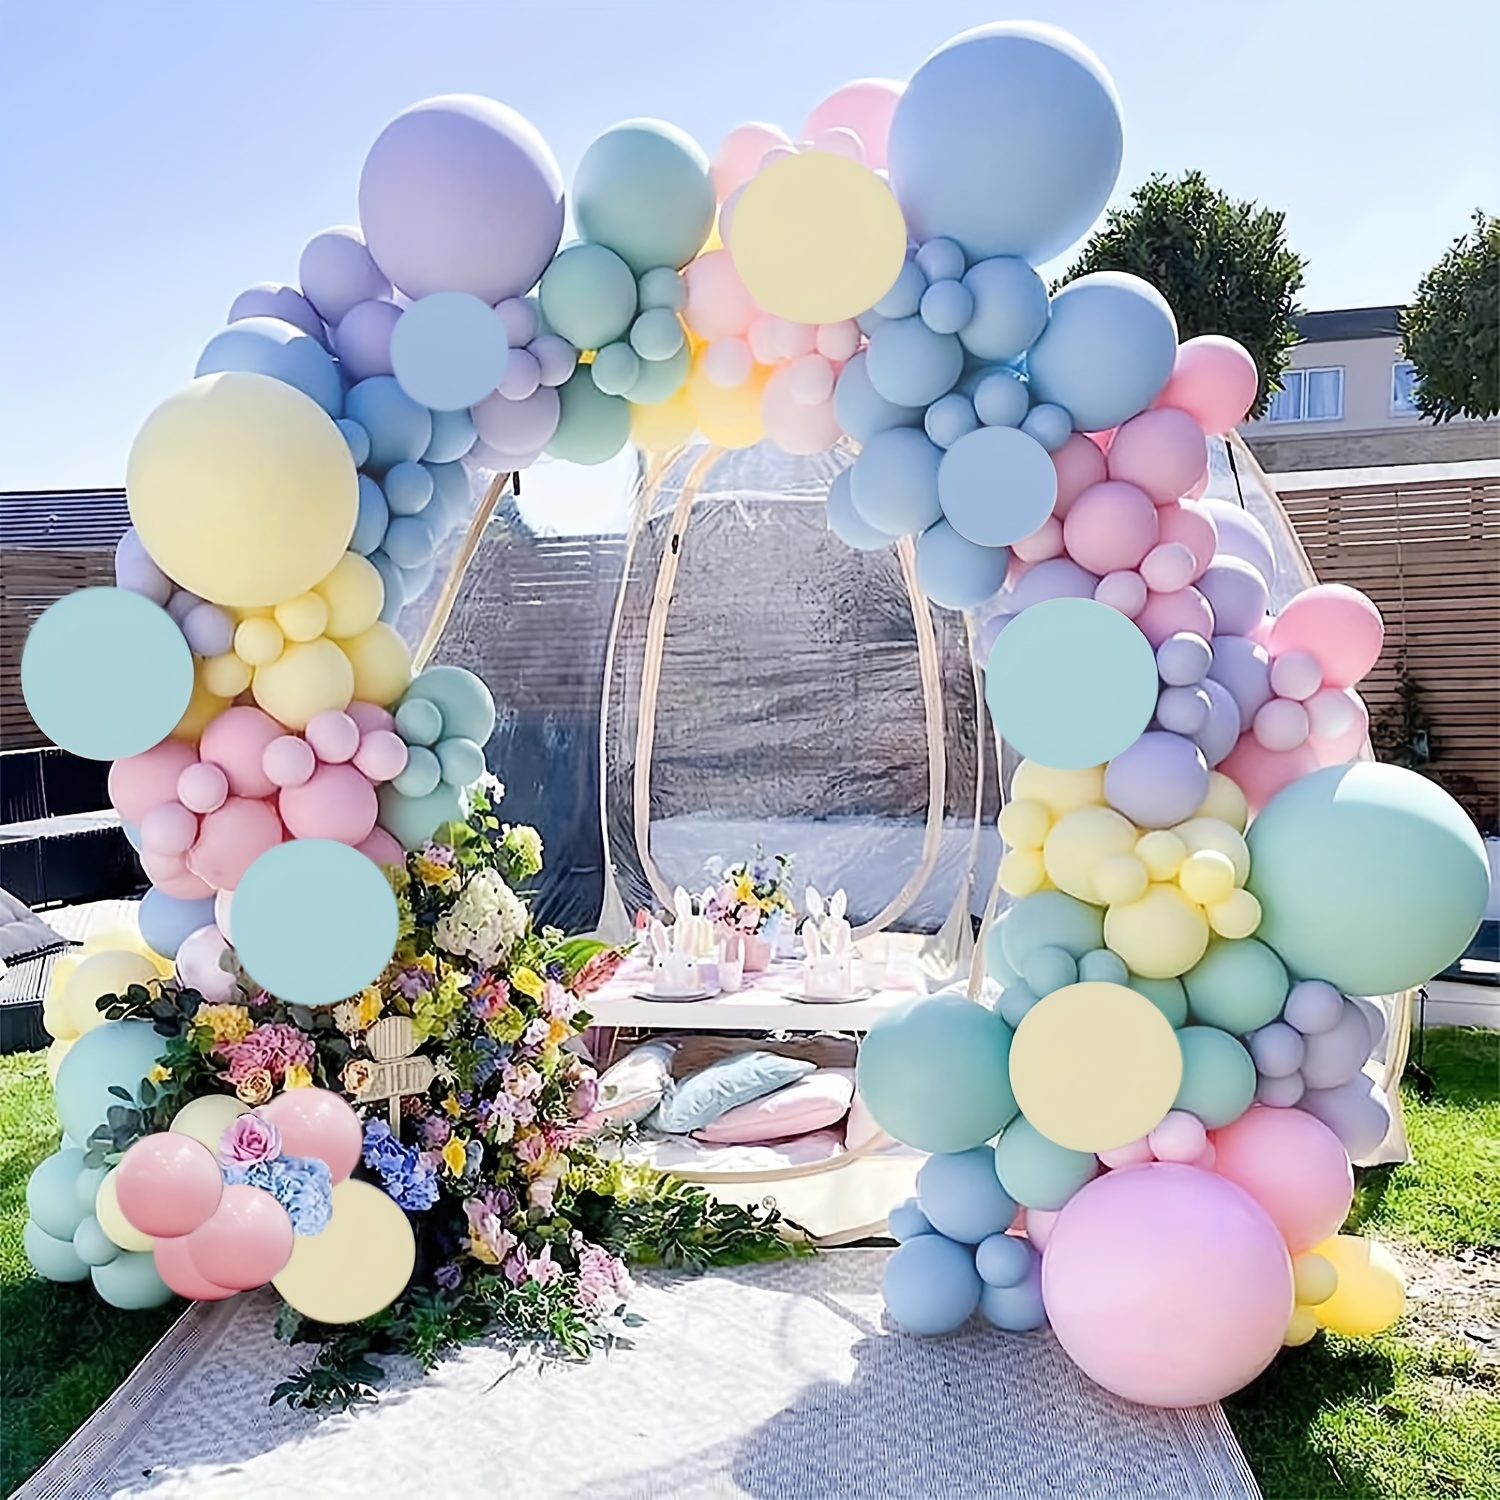 Globos de caramelo Guirnalda Baby Shower Decoración Albaricoque azul Doble  globo Arco Kit Niño Fiesta de cumpleaños Decoración Despedida de soltera  Suministros para bodas -  México